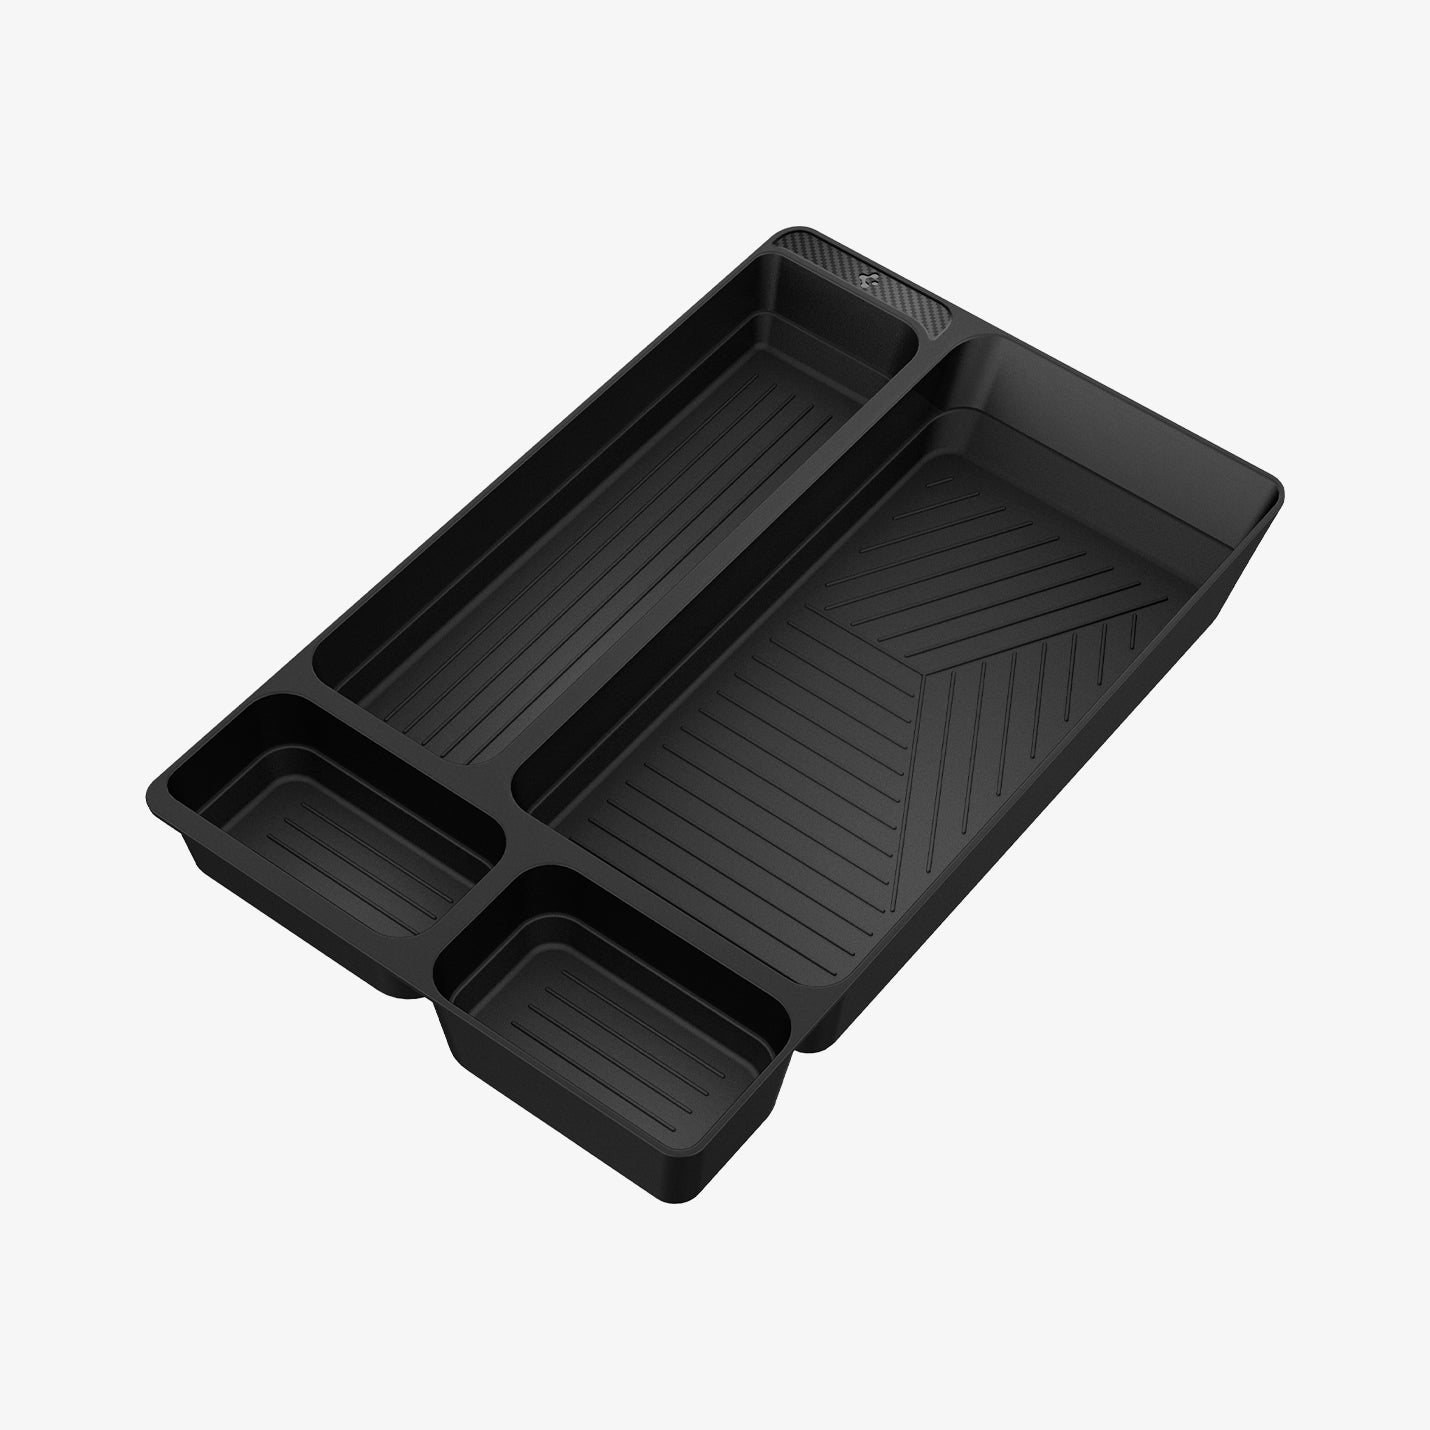 ACP06089 - Hyundai IONIQ 5 Center Console Organizer Tray in black showing the inside